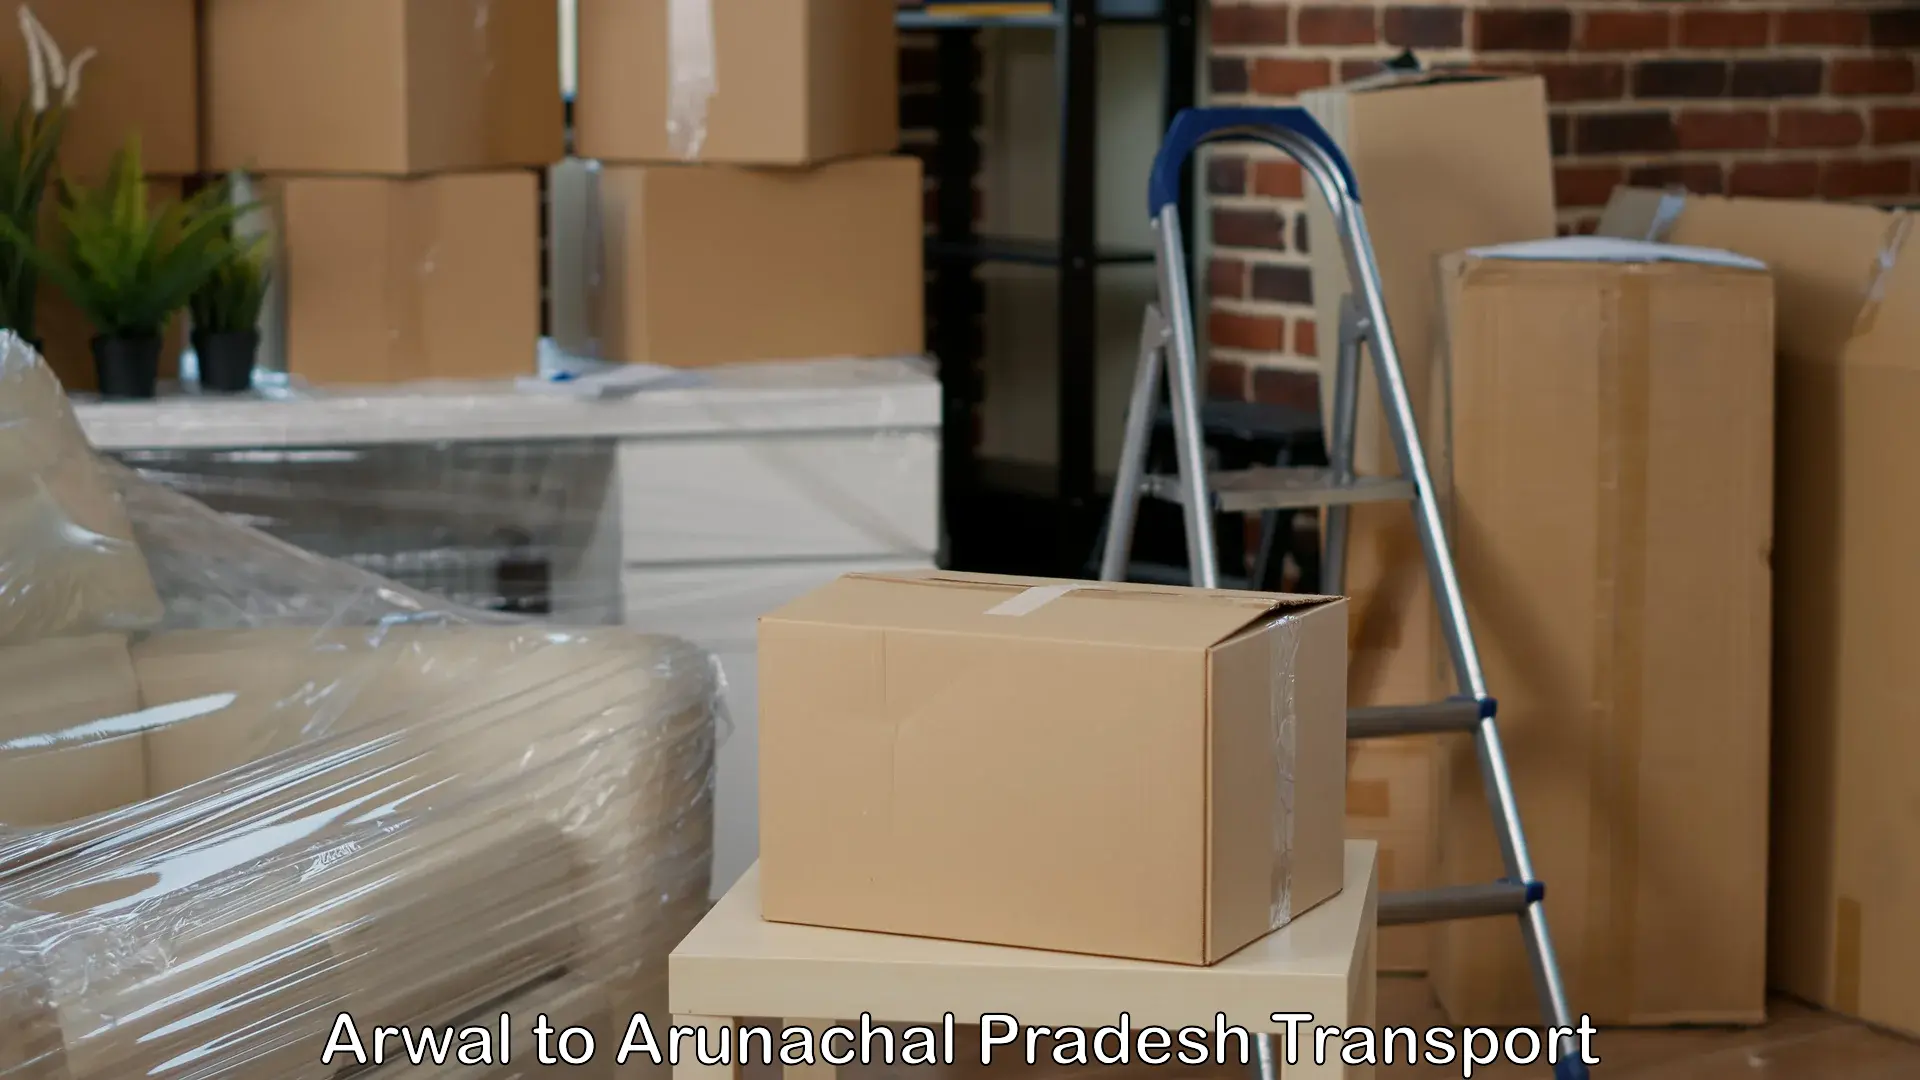 Container transportation services Arwal to Arunachal Pradesh